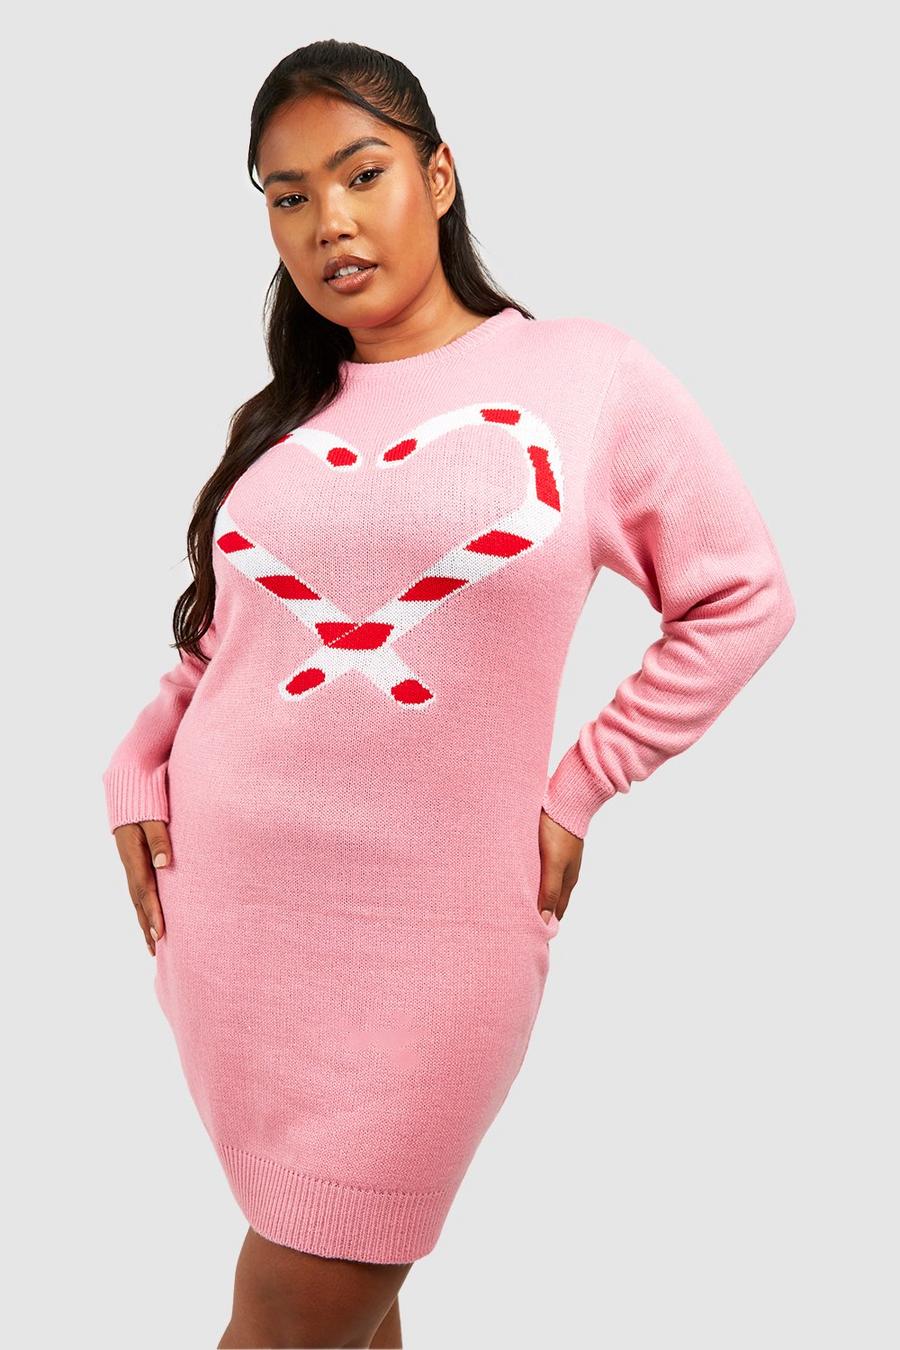 Vestito in maglia Plus Size natalizio con cuori Candy Cane, Baby pink